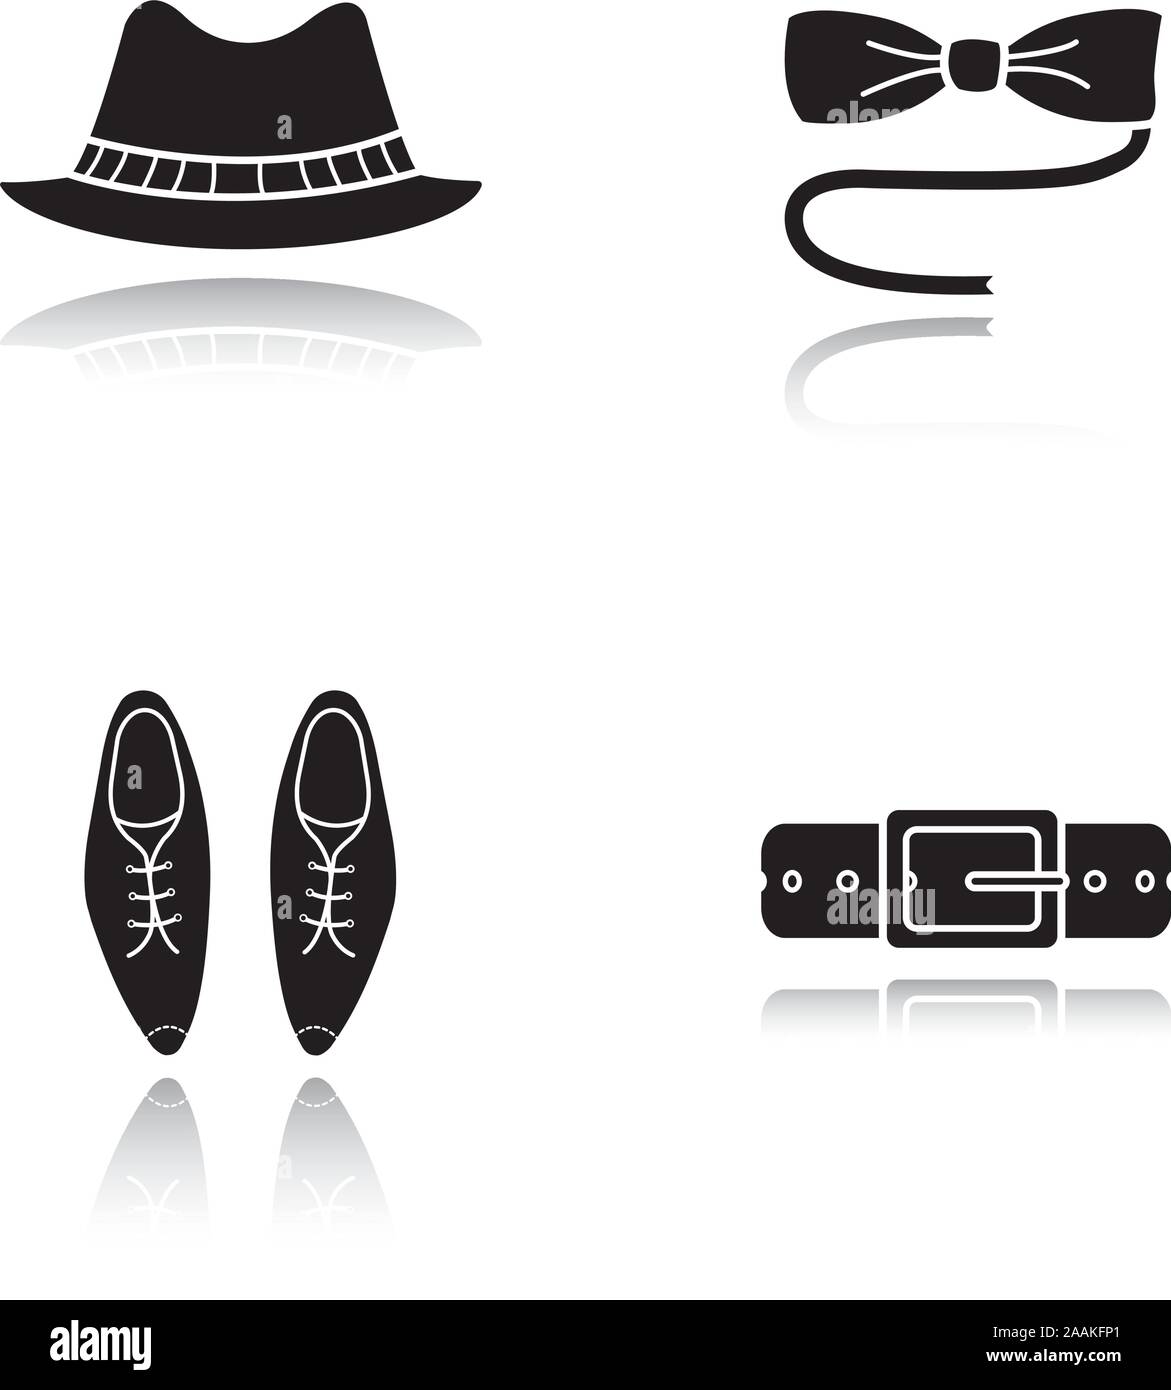 Los hombres de negro sombra de accesorios del conjunto de iconos. Homburg sombrero, corbata de mariposa, classic zapatos y cinturón de cuero. Ilustraciones vectoriales aislado Ilustración del Vector